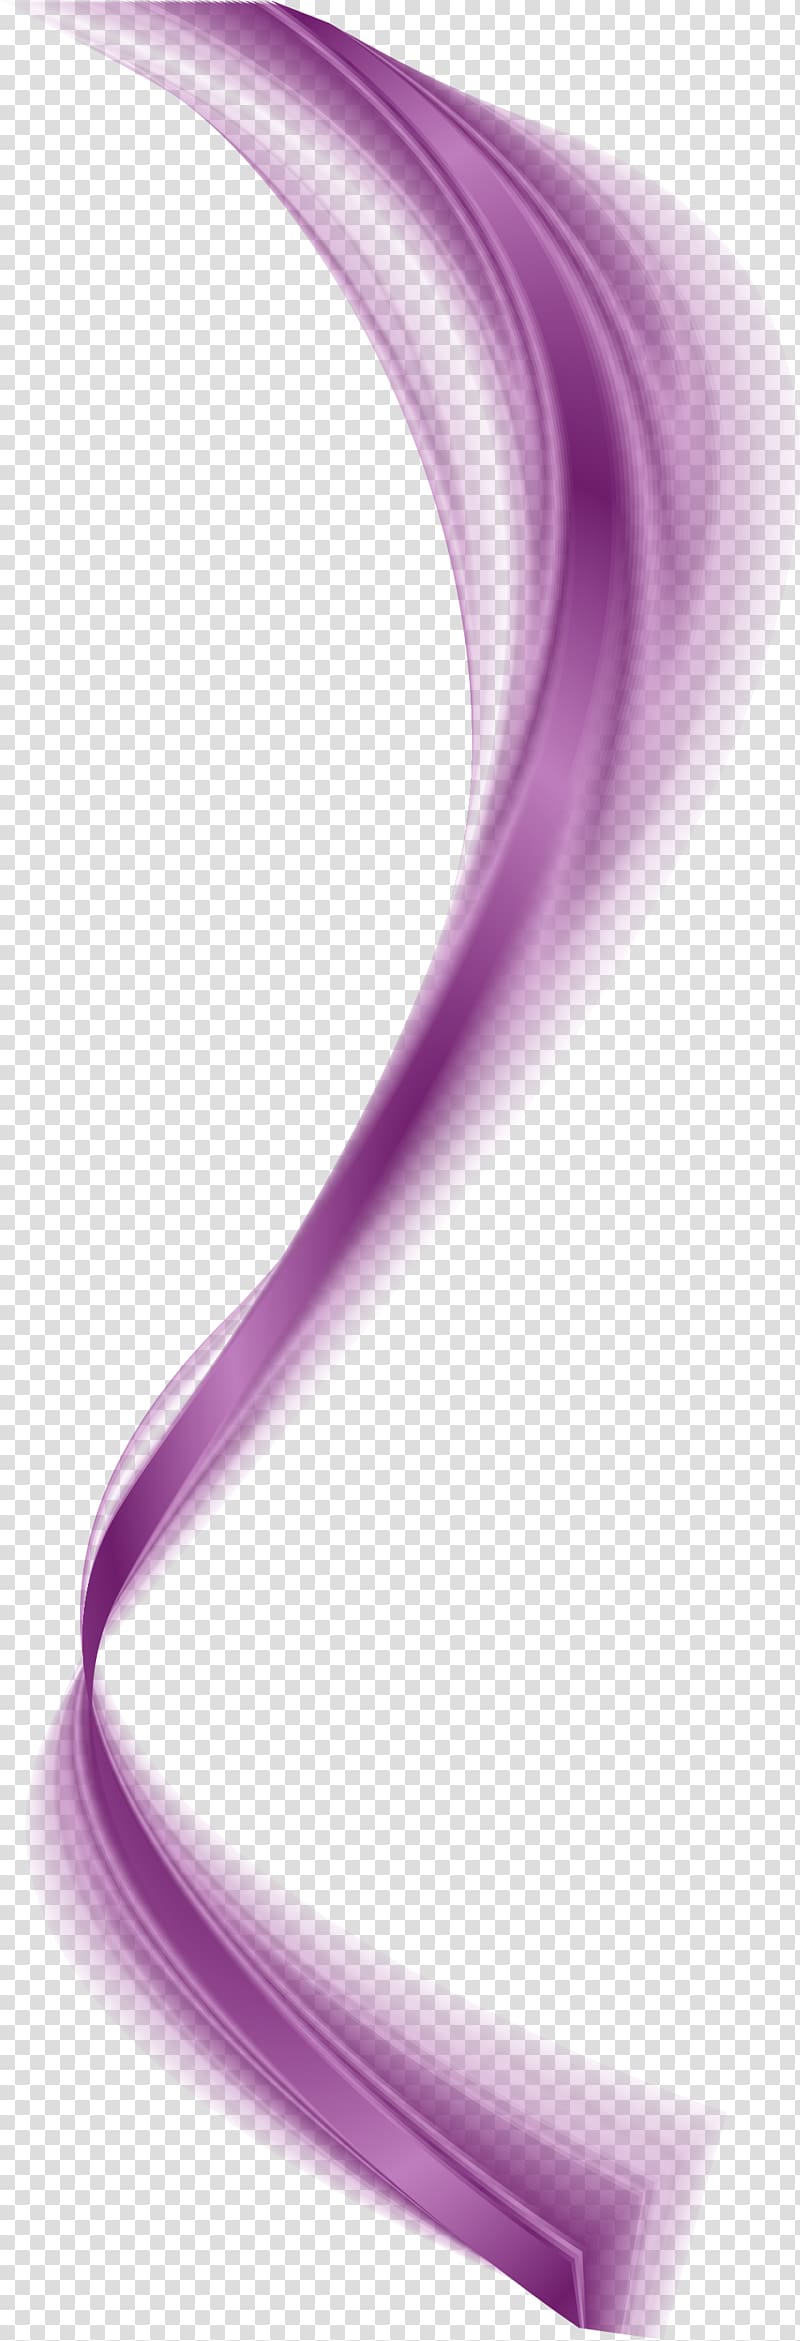 Light Violet Purple Lilac, purple transparent background PNG clipart